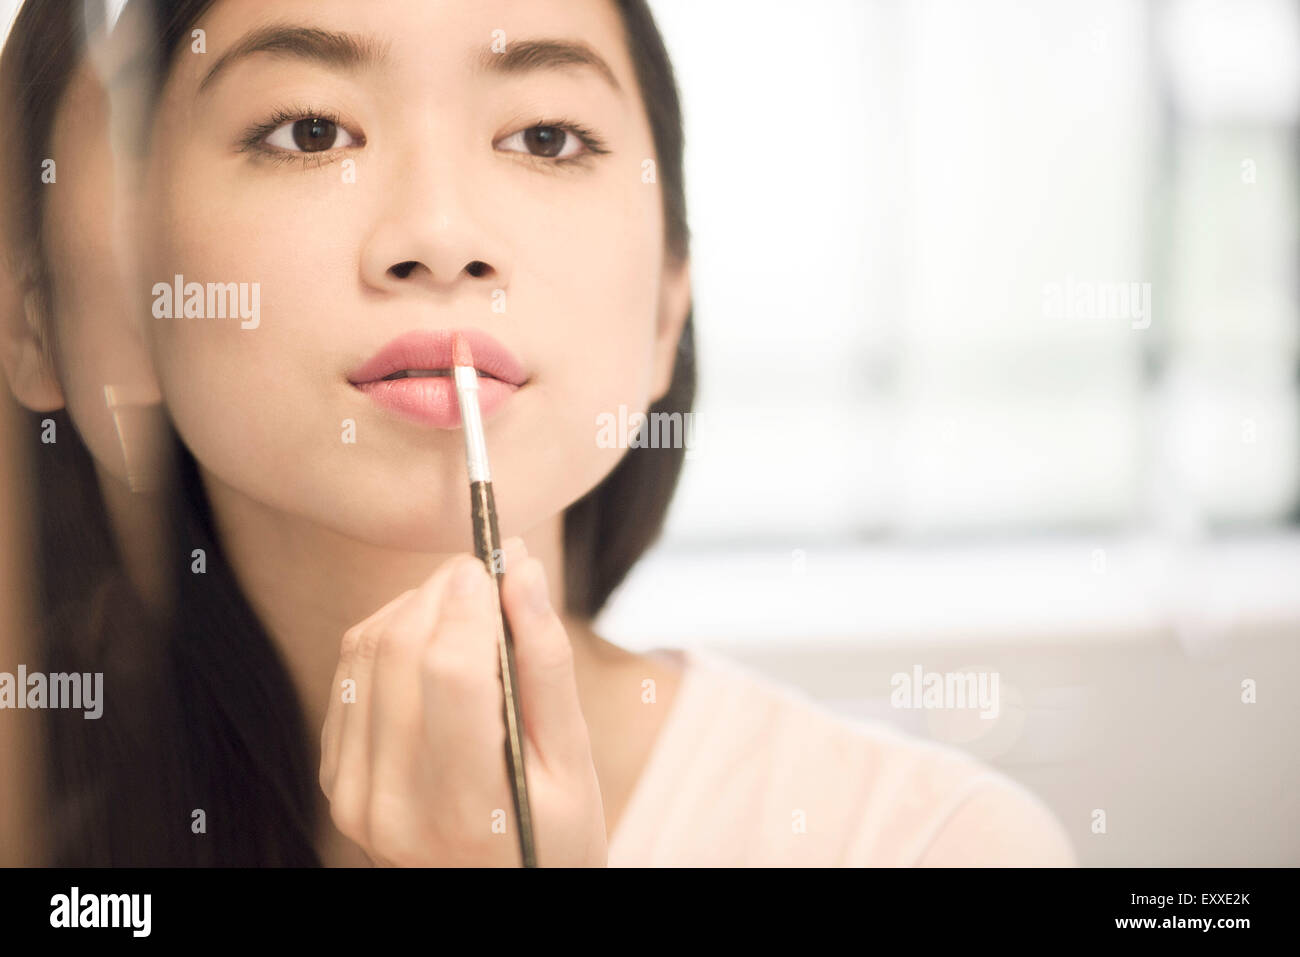 Woman using lipbrush to apply lipstick Stock Photo